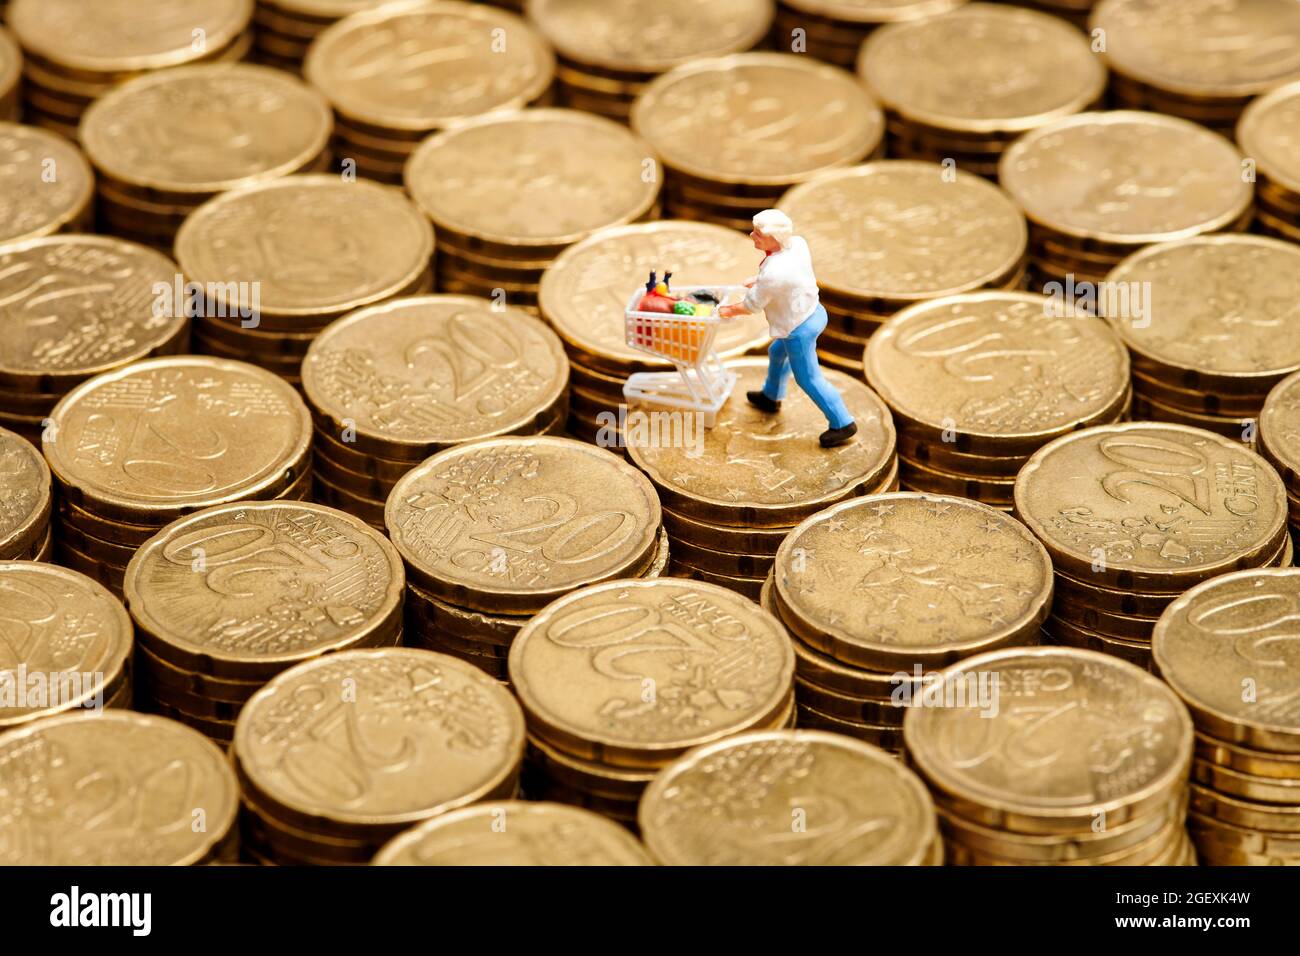 Nahaufnahme Miniatur-Mann mit Einkaufswagen auf Stapeln mit 20-Cent-Euro-Münzen platziert Stockfoto